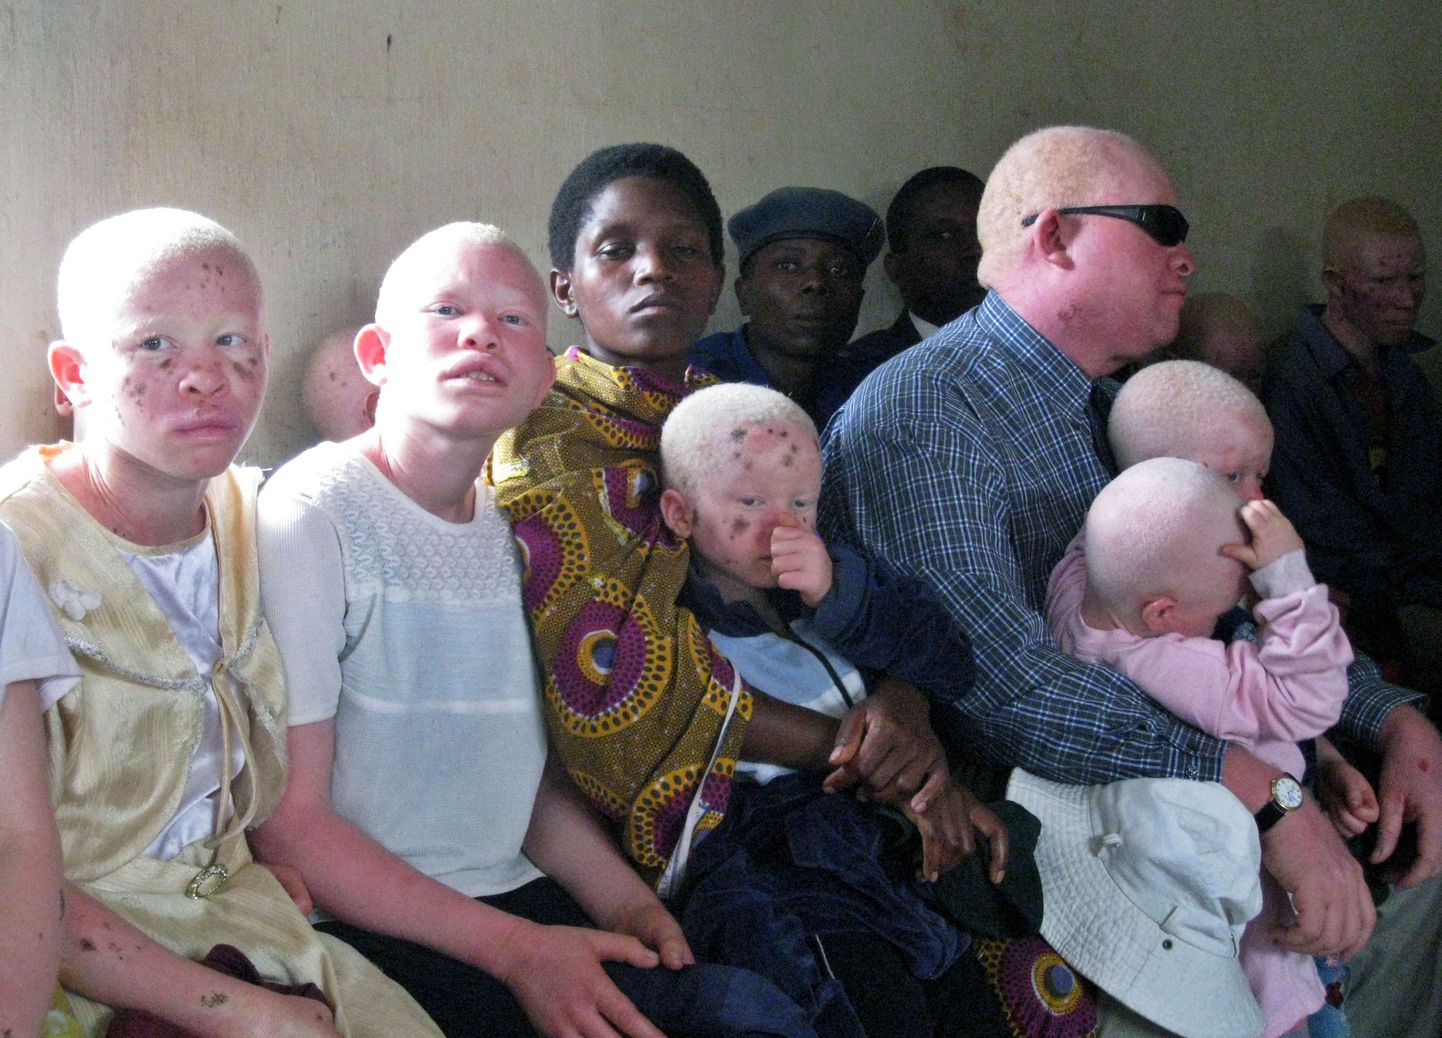 Tansaania sai esimese albiinost parlamendisaadiku. Fotol perekond, kus isa ja lapsed on albiinod